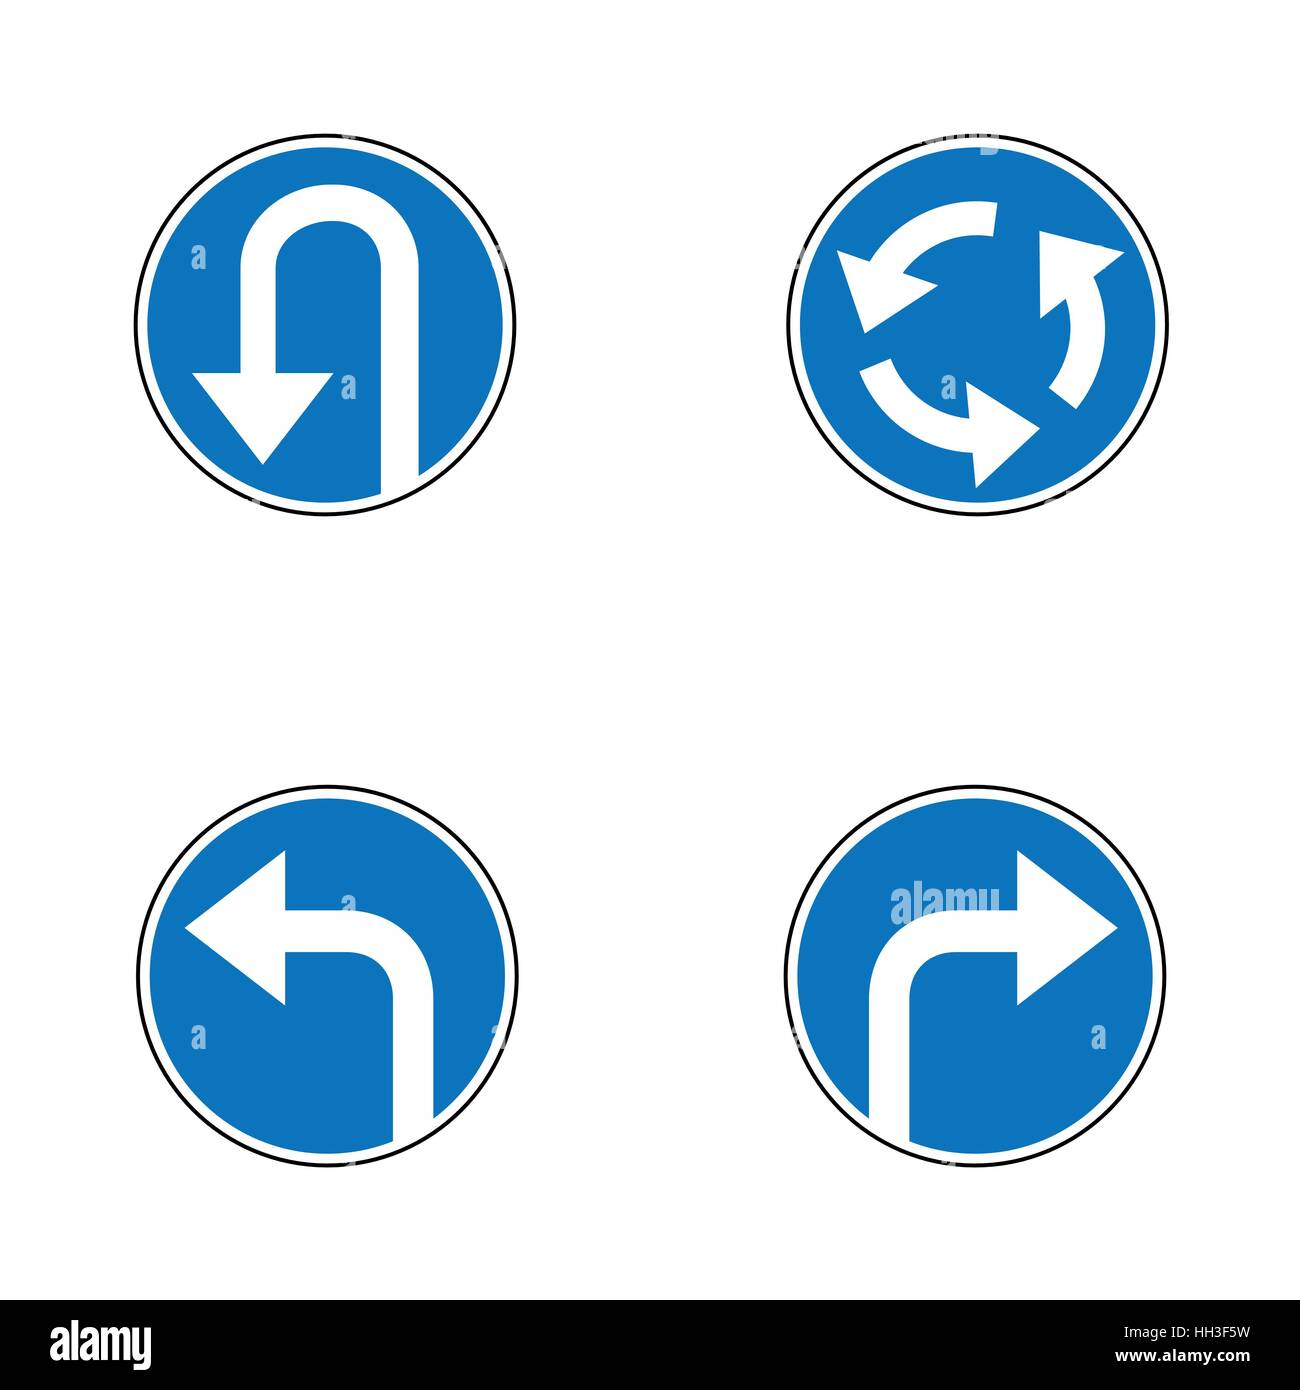 Panneau de signalisation rond point Banque d'images vectorielles - Page 3 -  Alamy